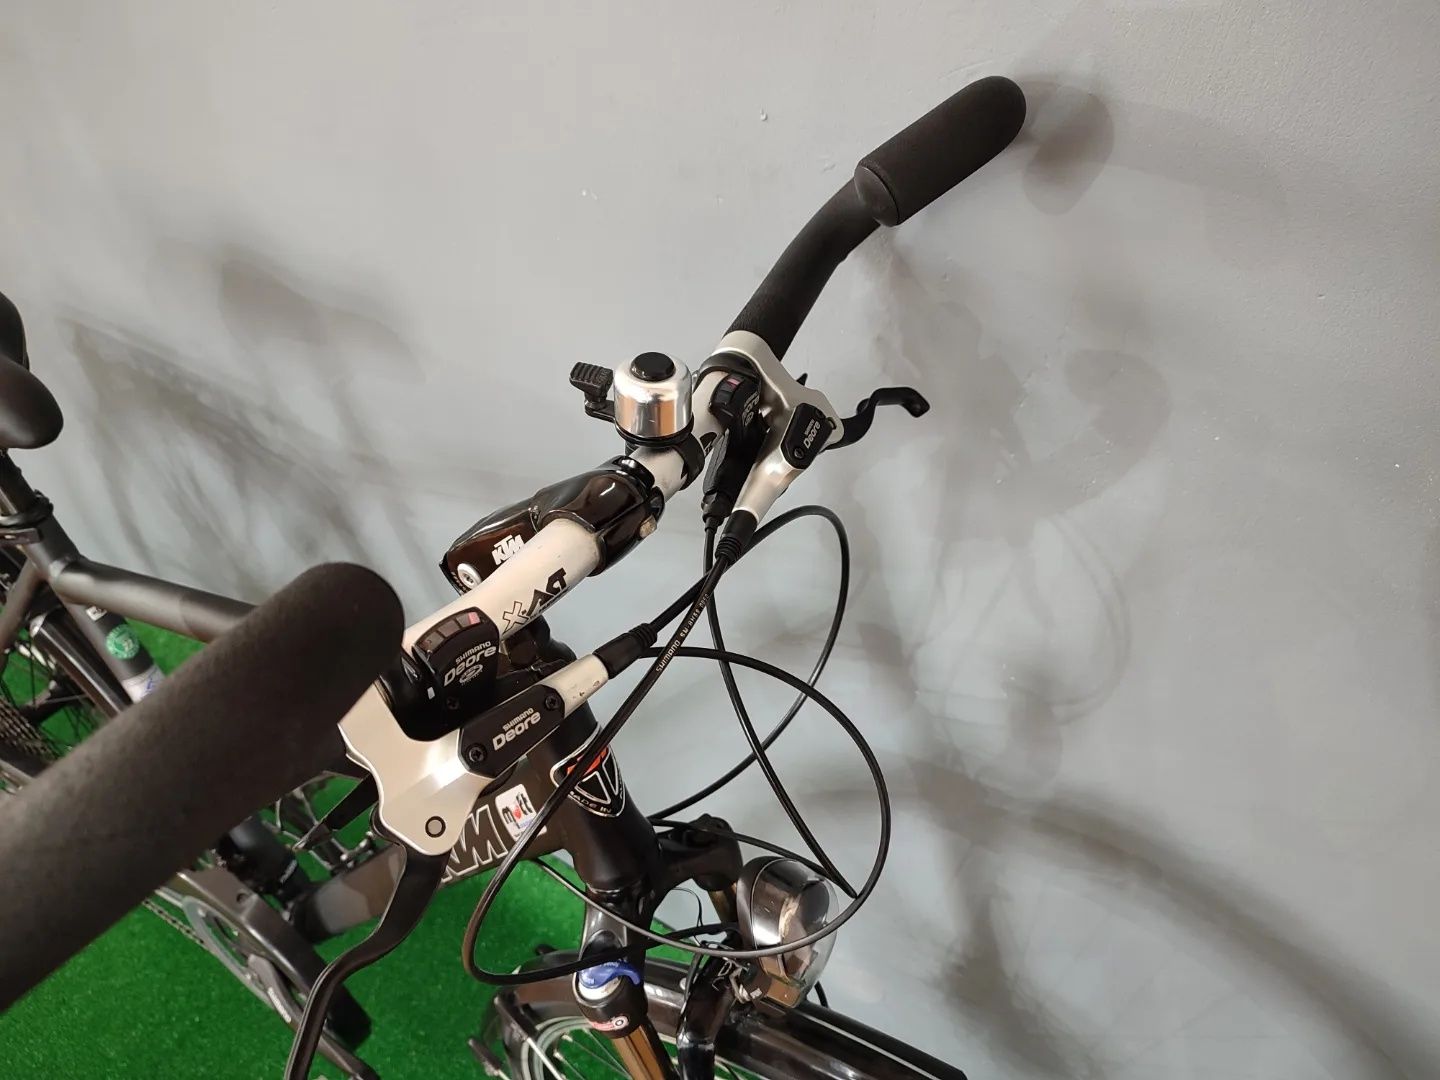 Стан нового • Міський, чоловічий велосипед KTM • Гідравлічні гальма